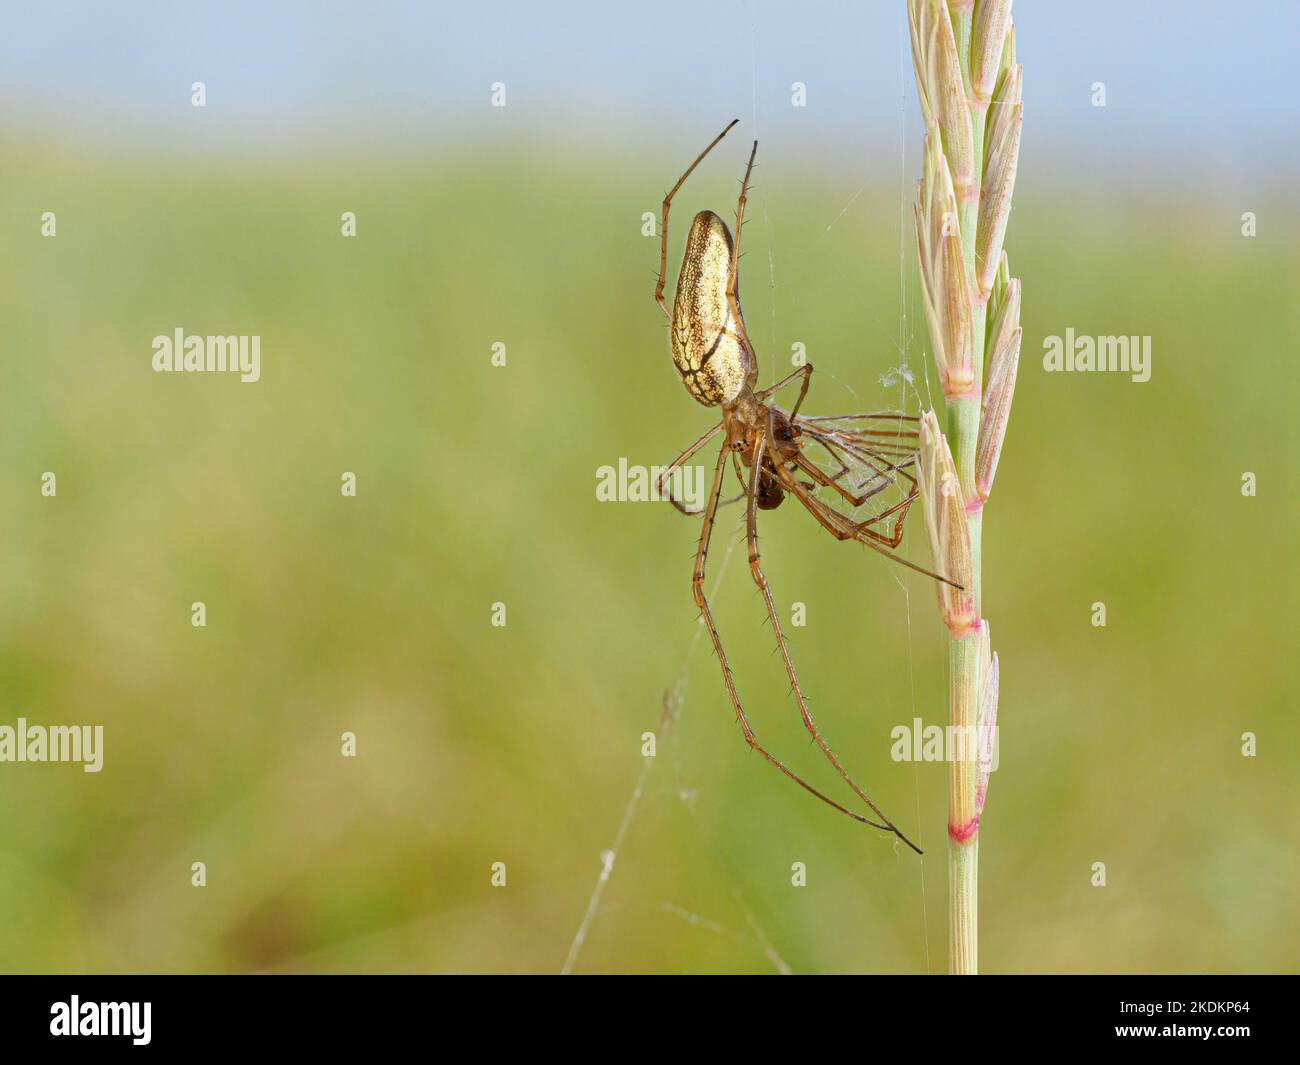 Araignée Orb weaver longue à mâchoires, Tetragnatha extensa, adulte sur la proie alimentaire de tige d'herbe Norfolk juin Banque D'Images